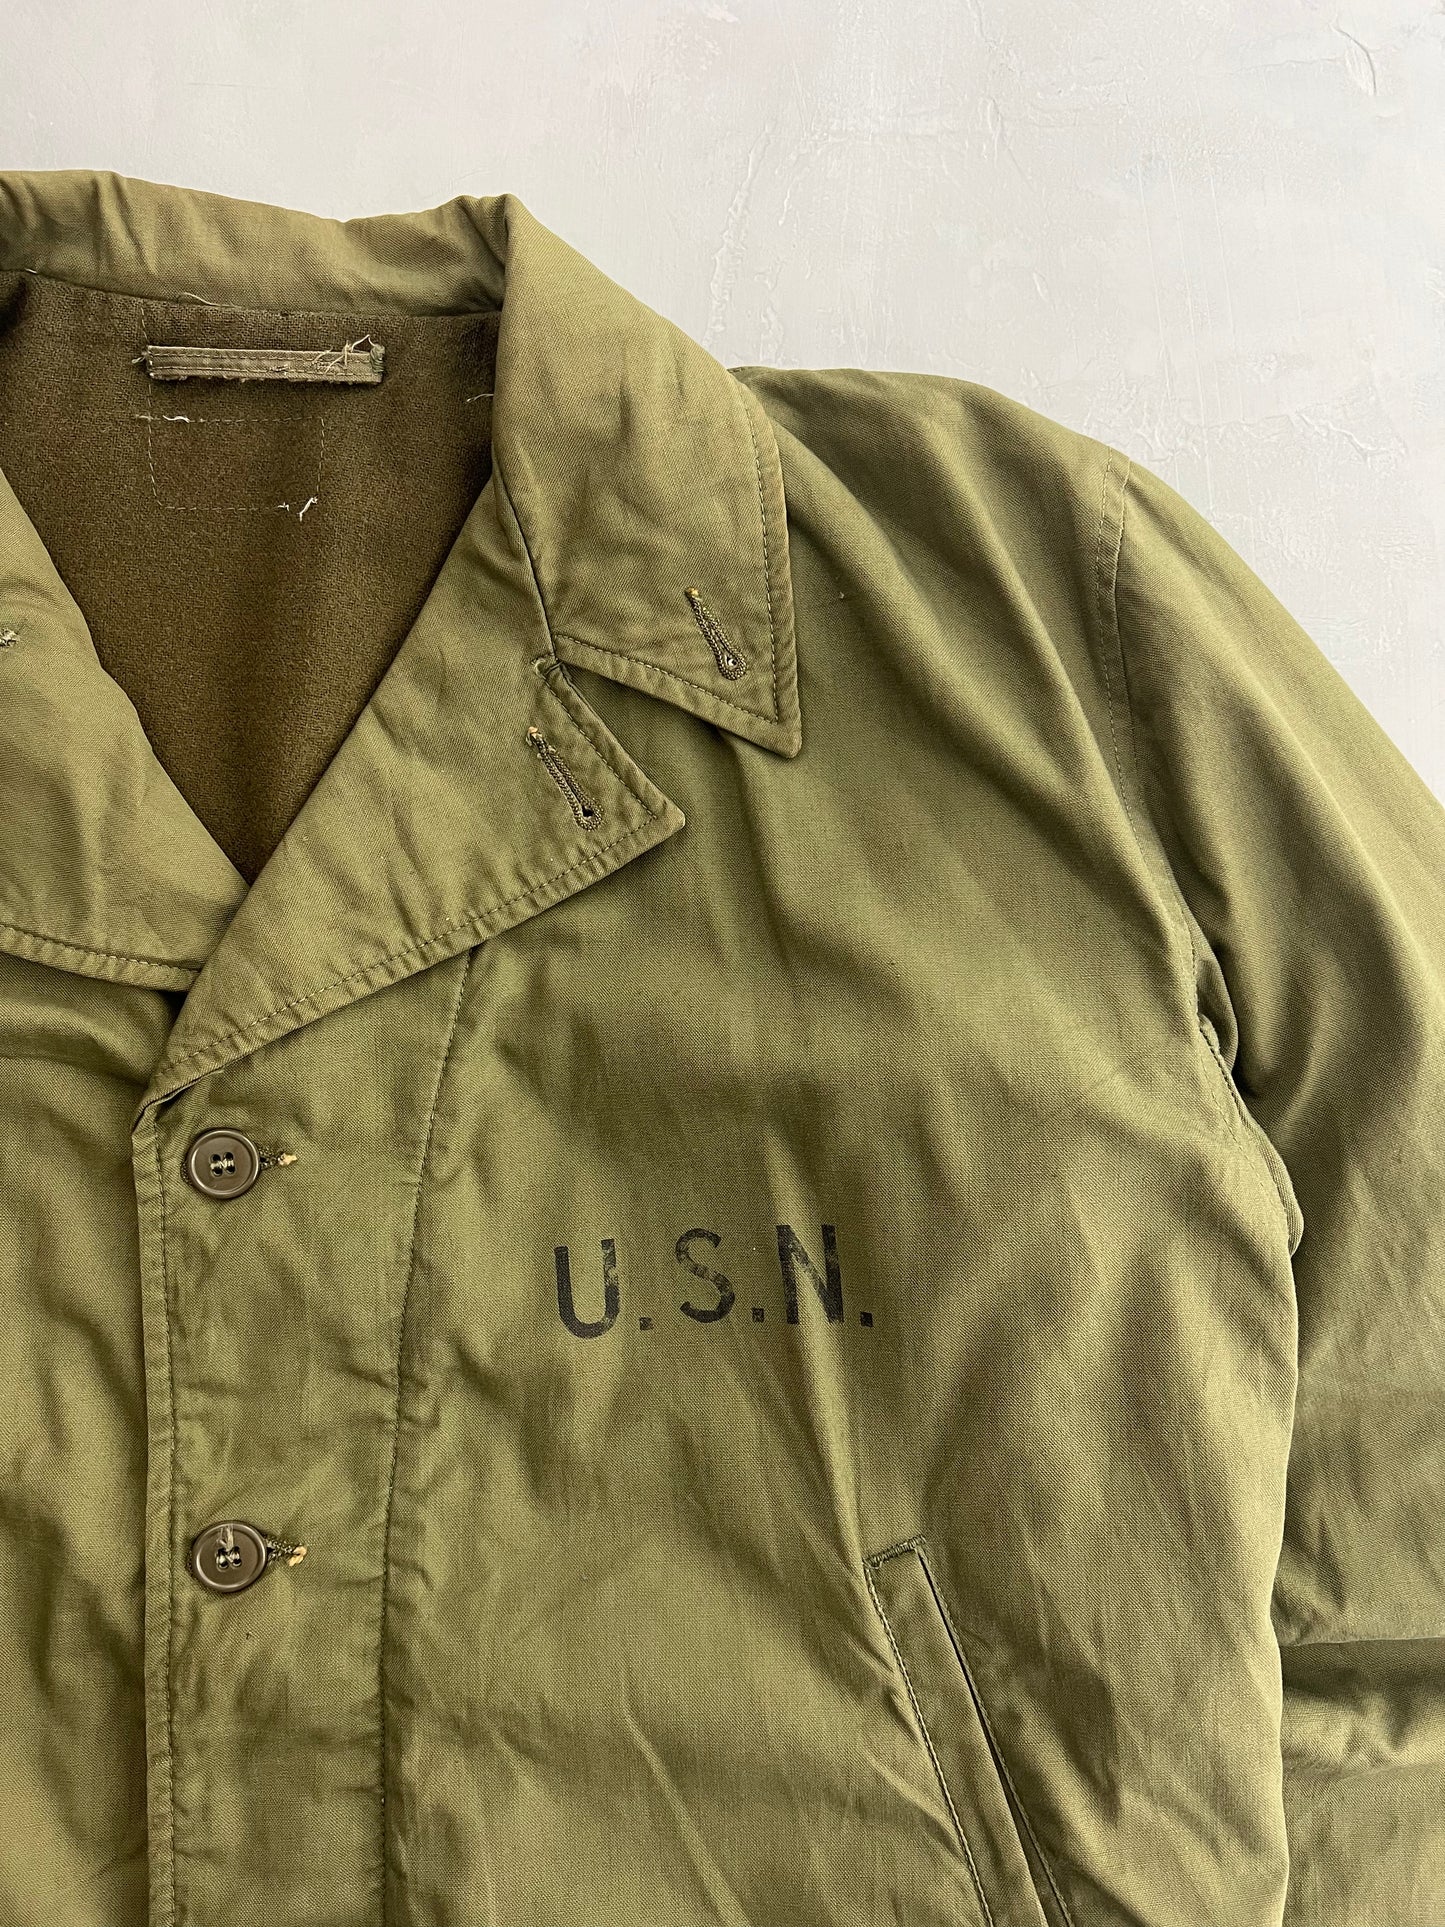 N4 U.S.N. Deck Jacket 1940's [L]